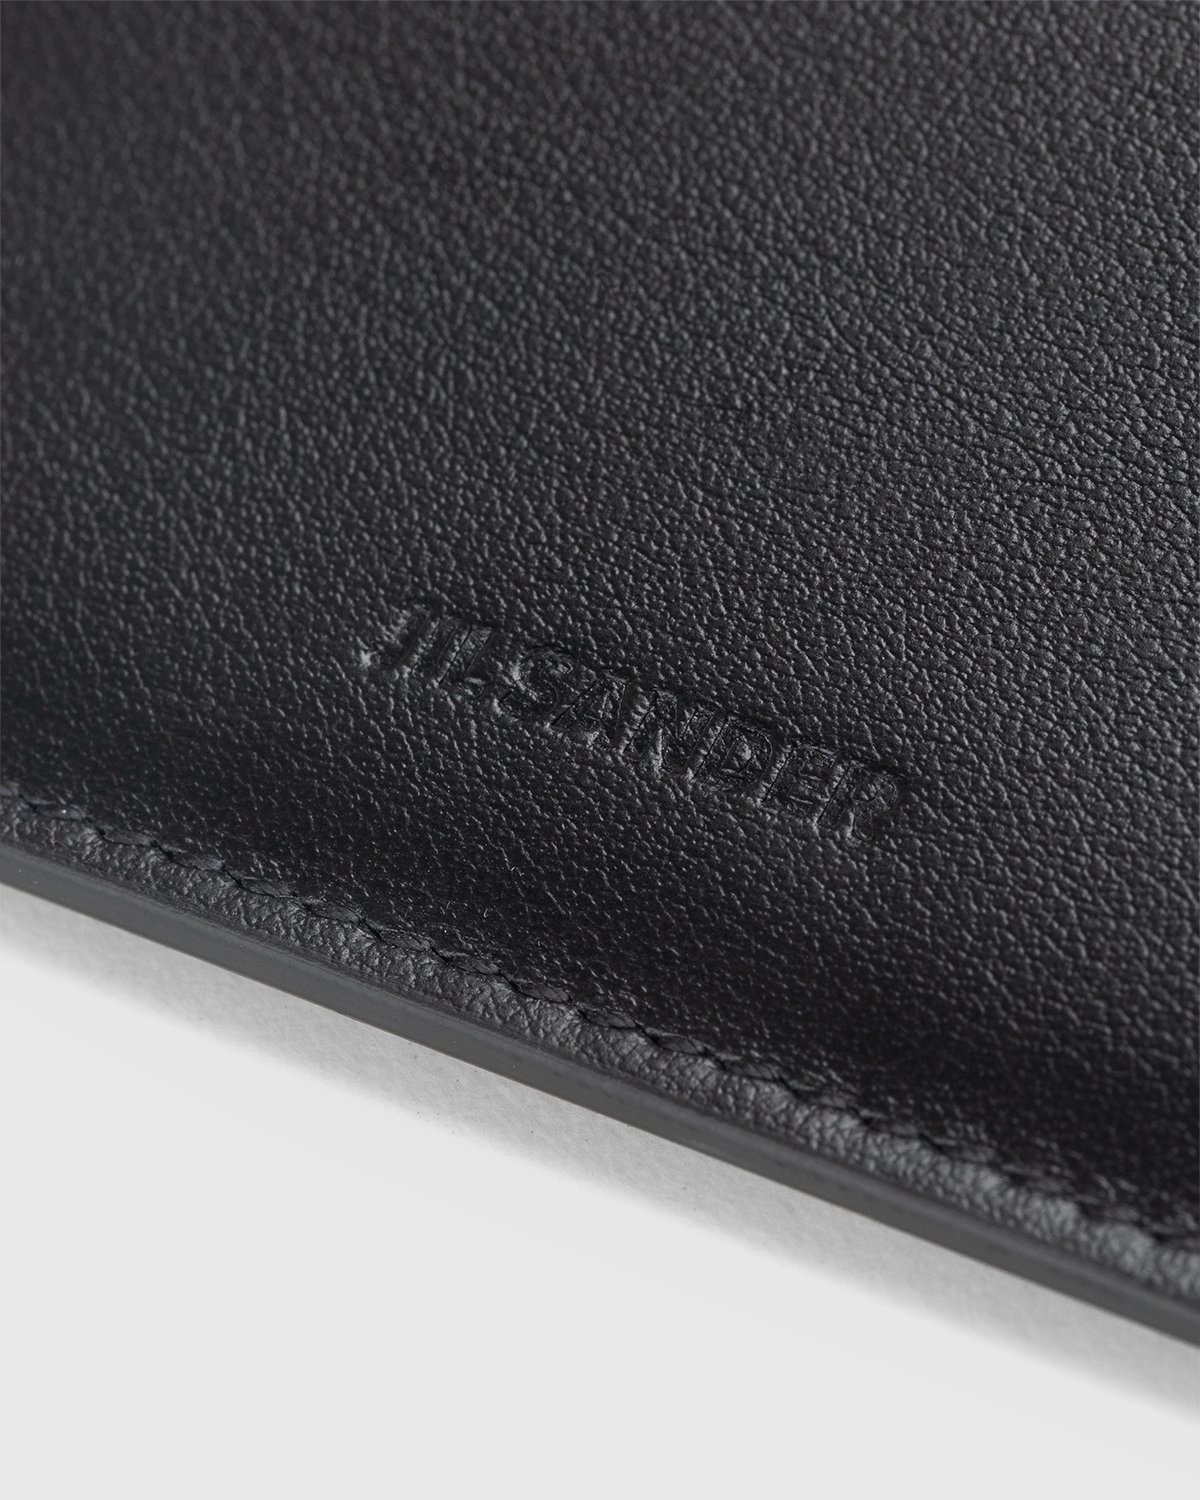 Jil Sander – Leather Card Holder Black - Wallets - Black - Image 4